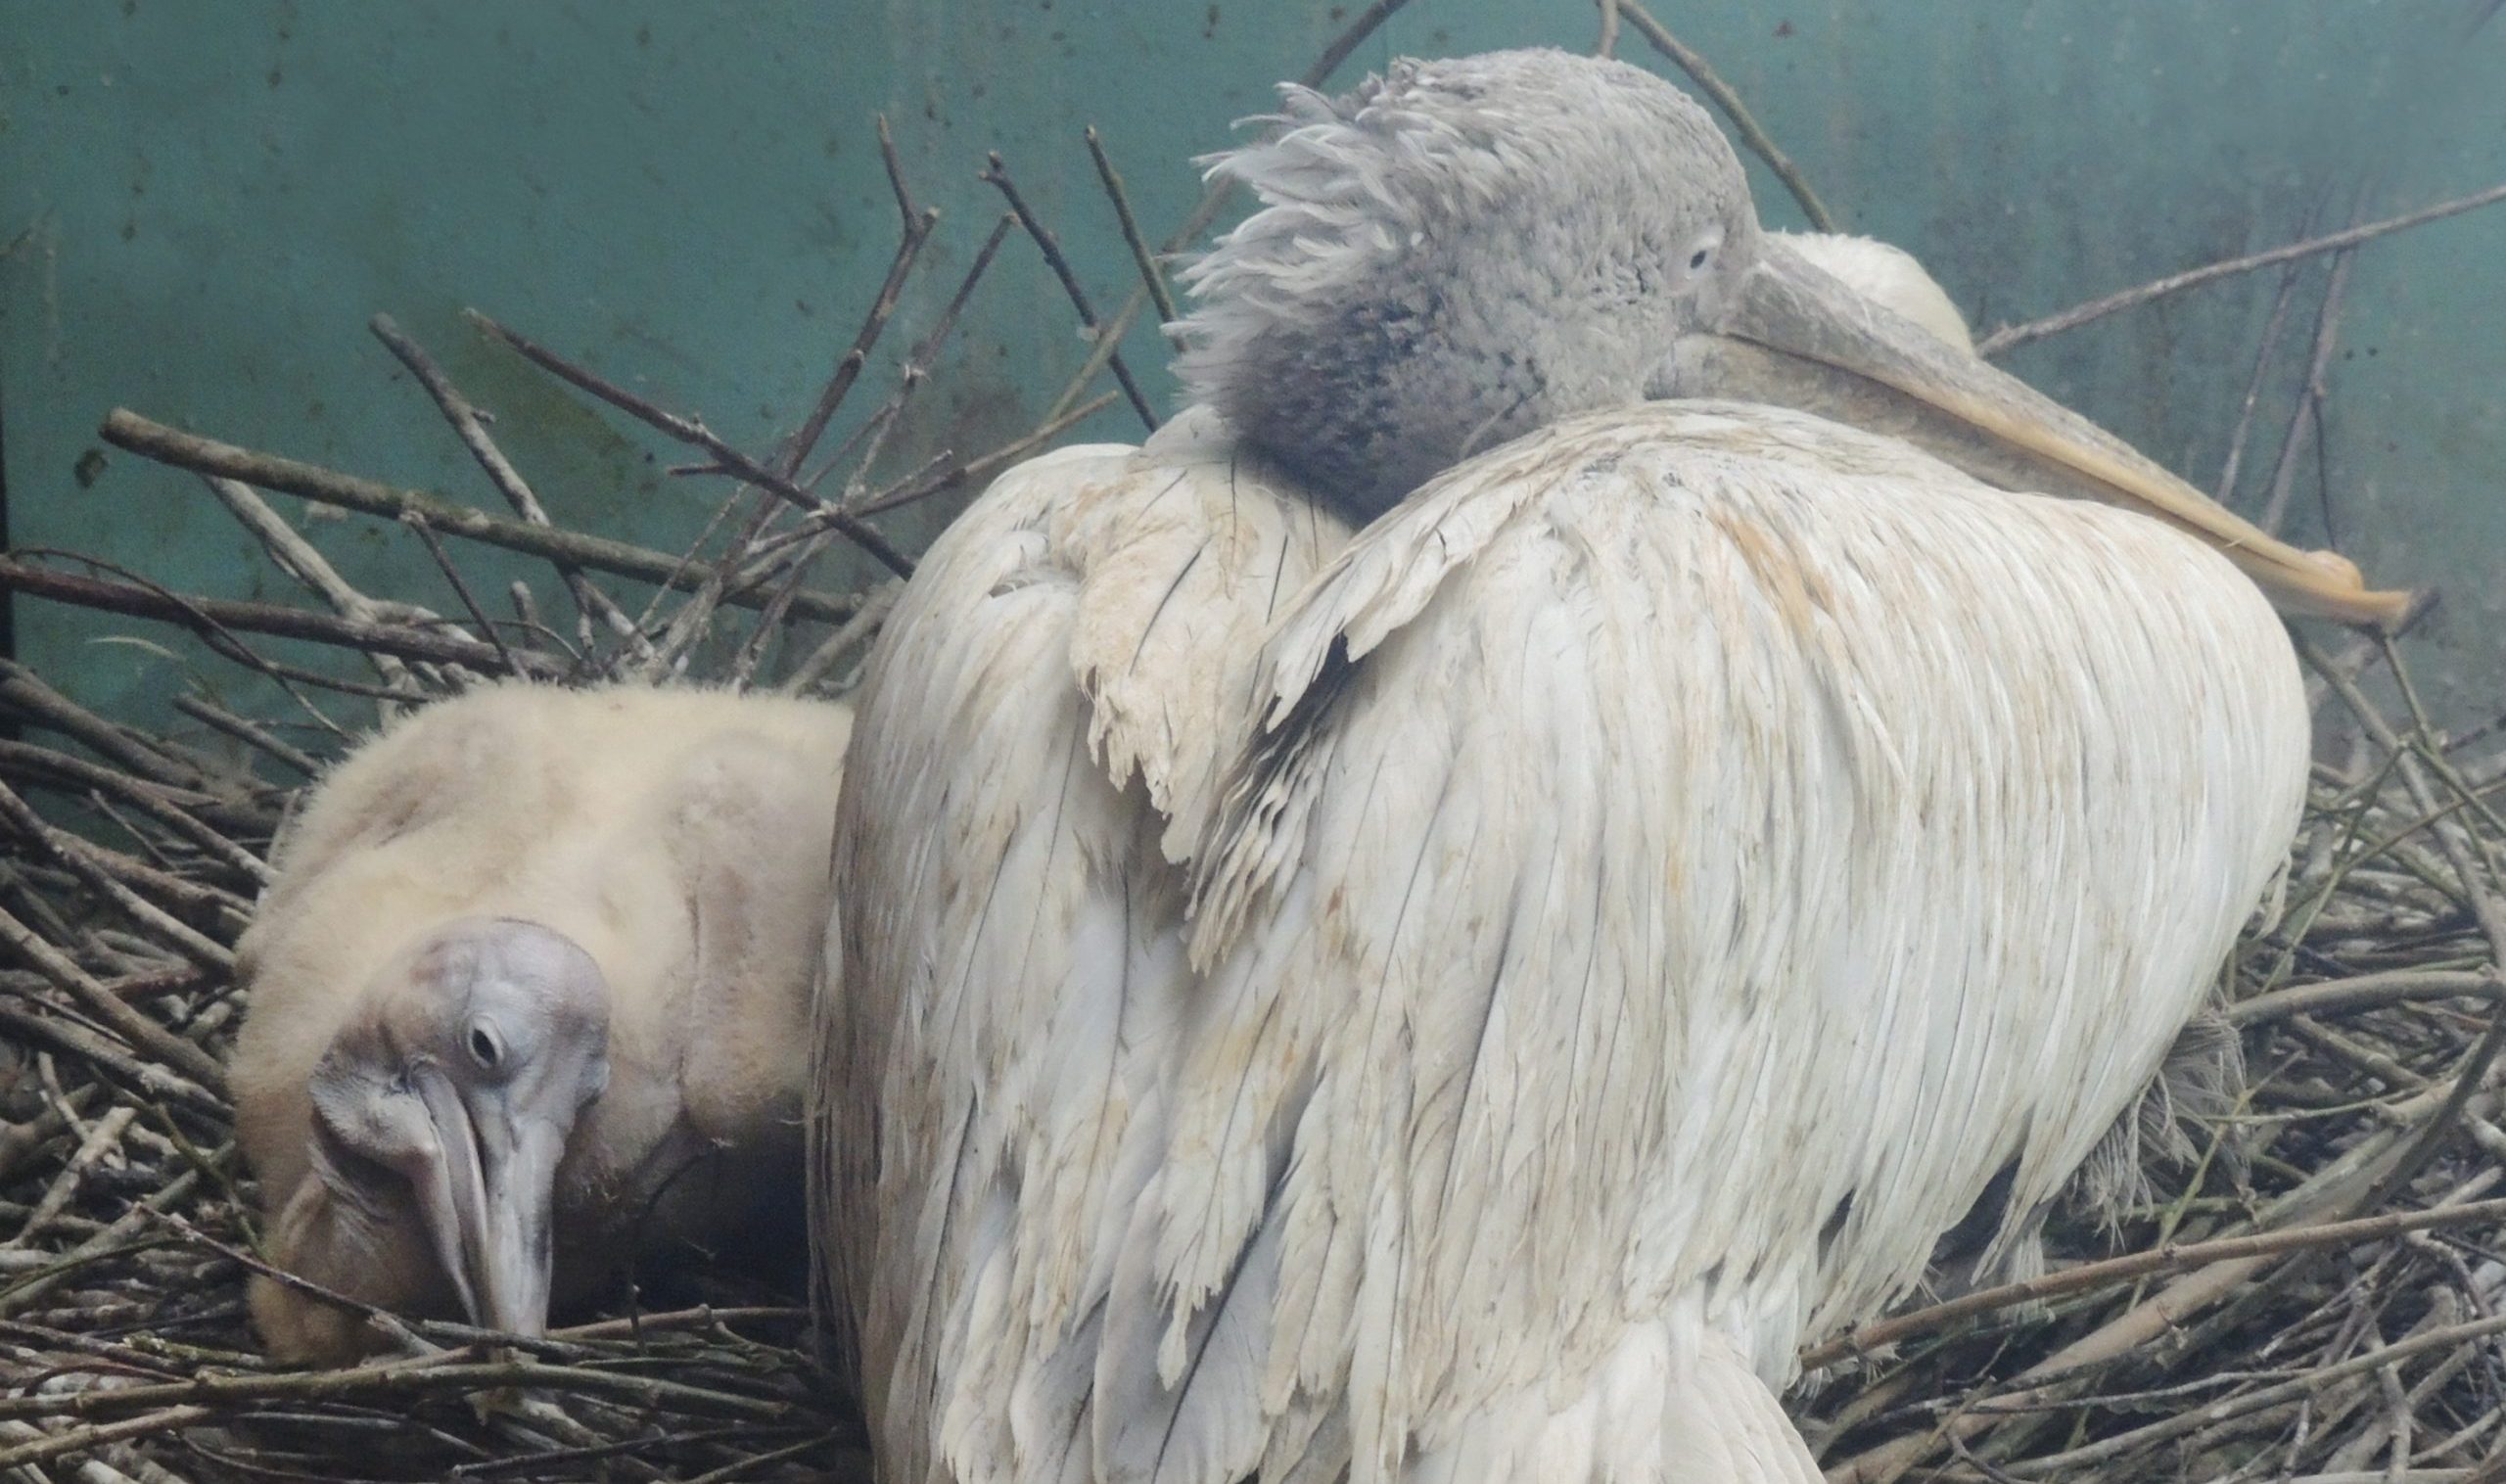 Первый в 2021-м: в Московском зоопарке появился на свет птенец кудрявого пеликана. Фото предоставили в пресс-службе Московского зоопарка